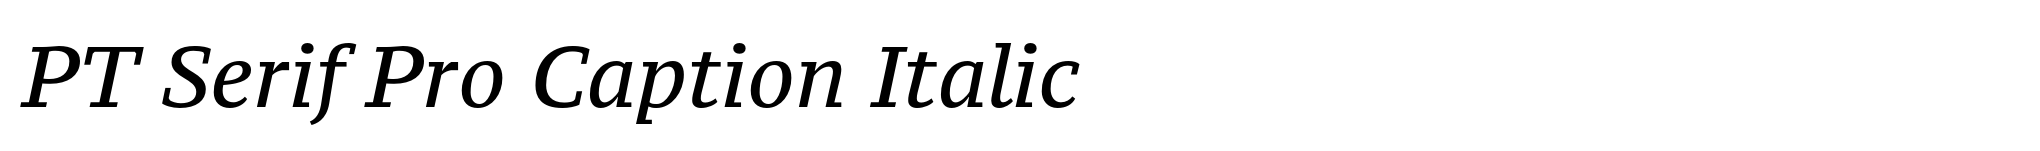 PT Serif Pro Caption Italic image